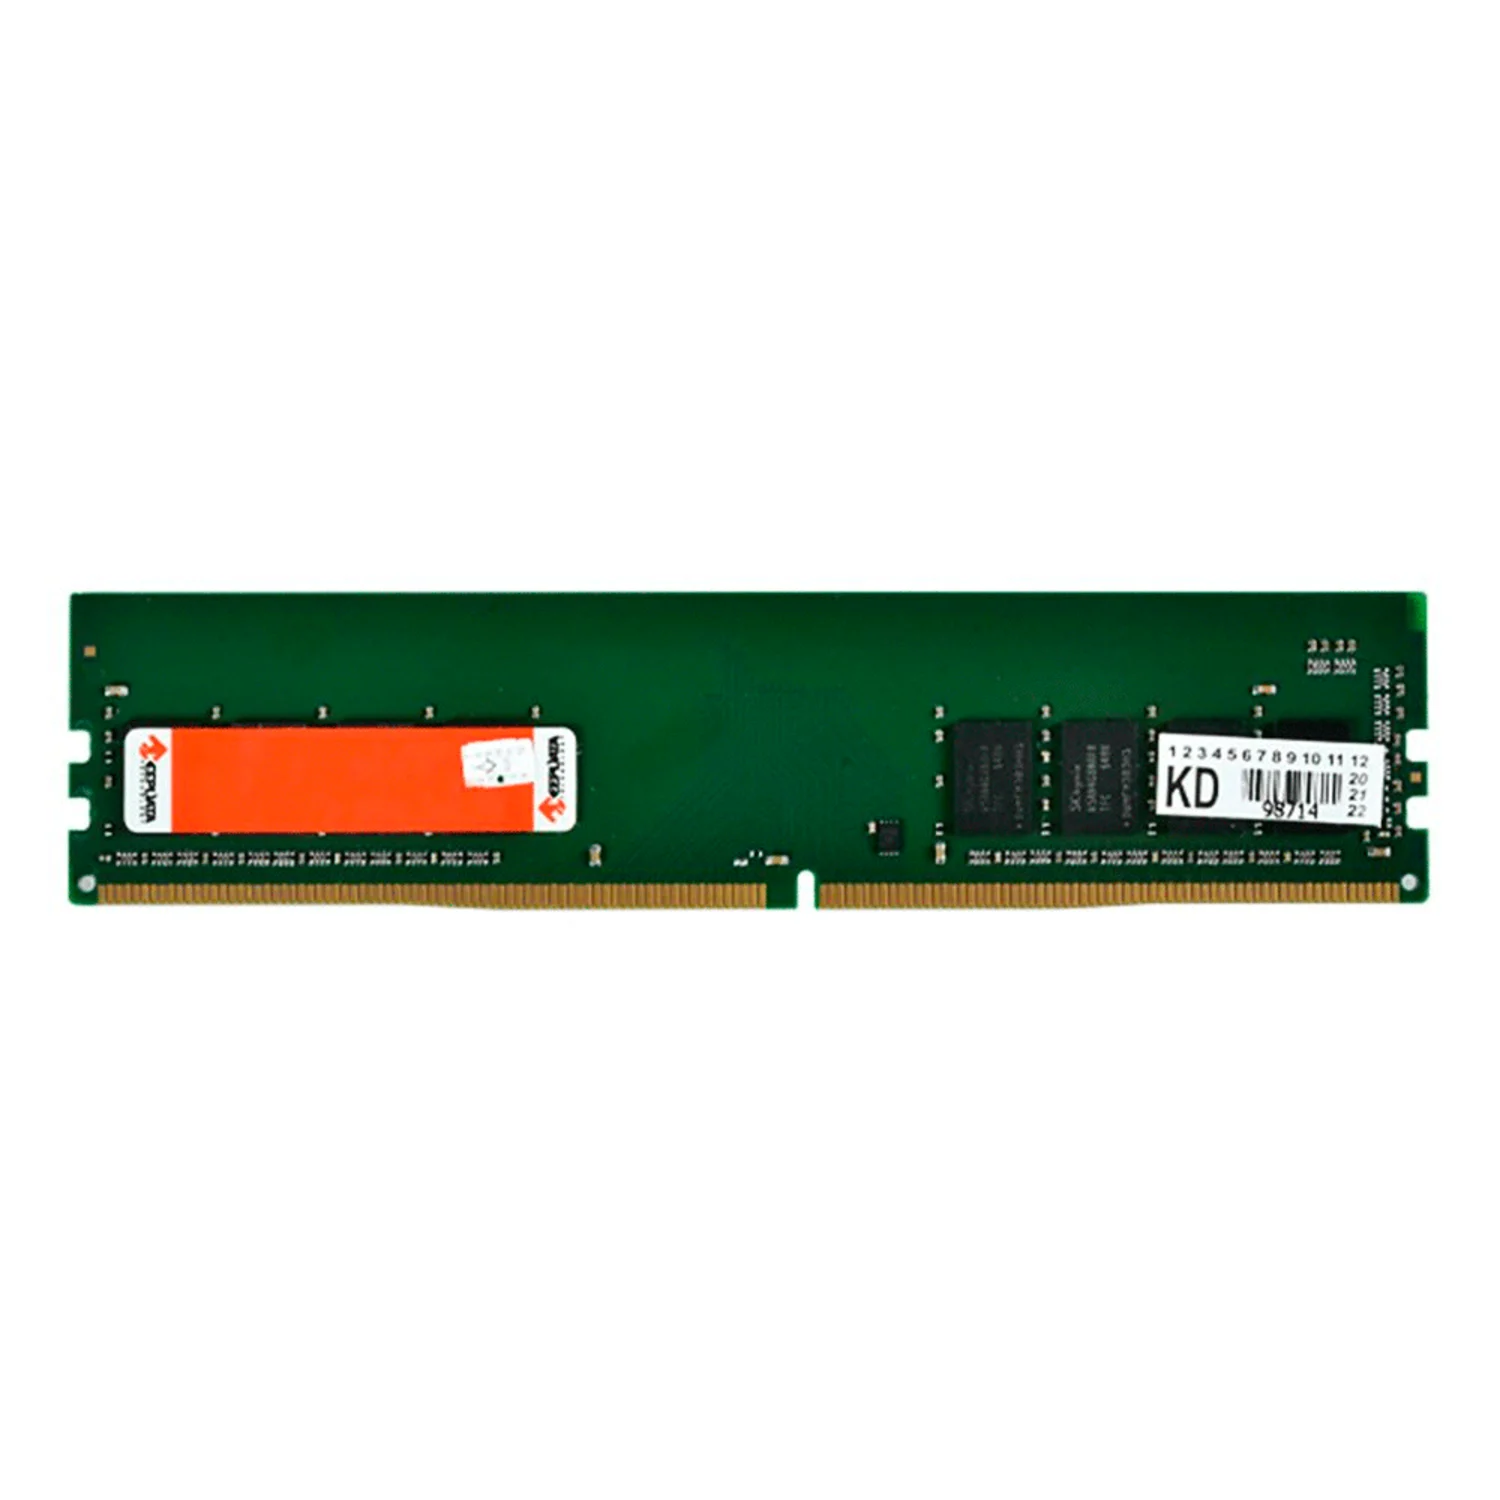 Memória RAM Keepdata KD32N22/16G 16GB DDR4 3200